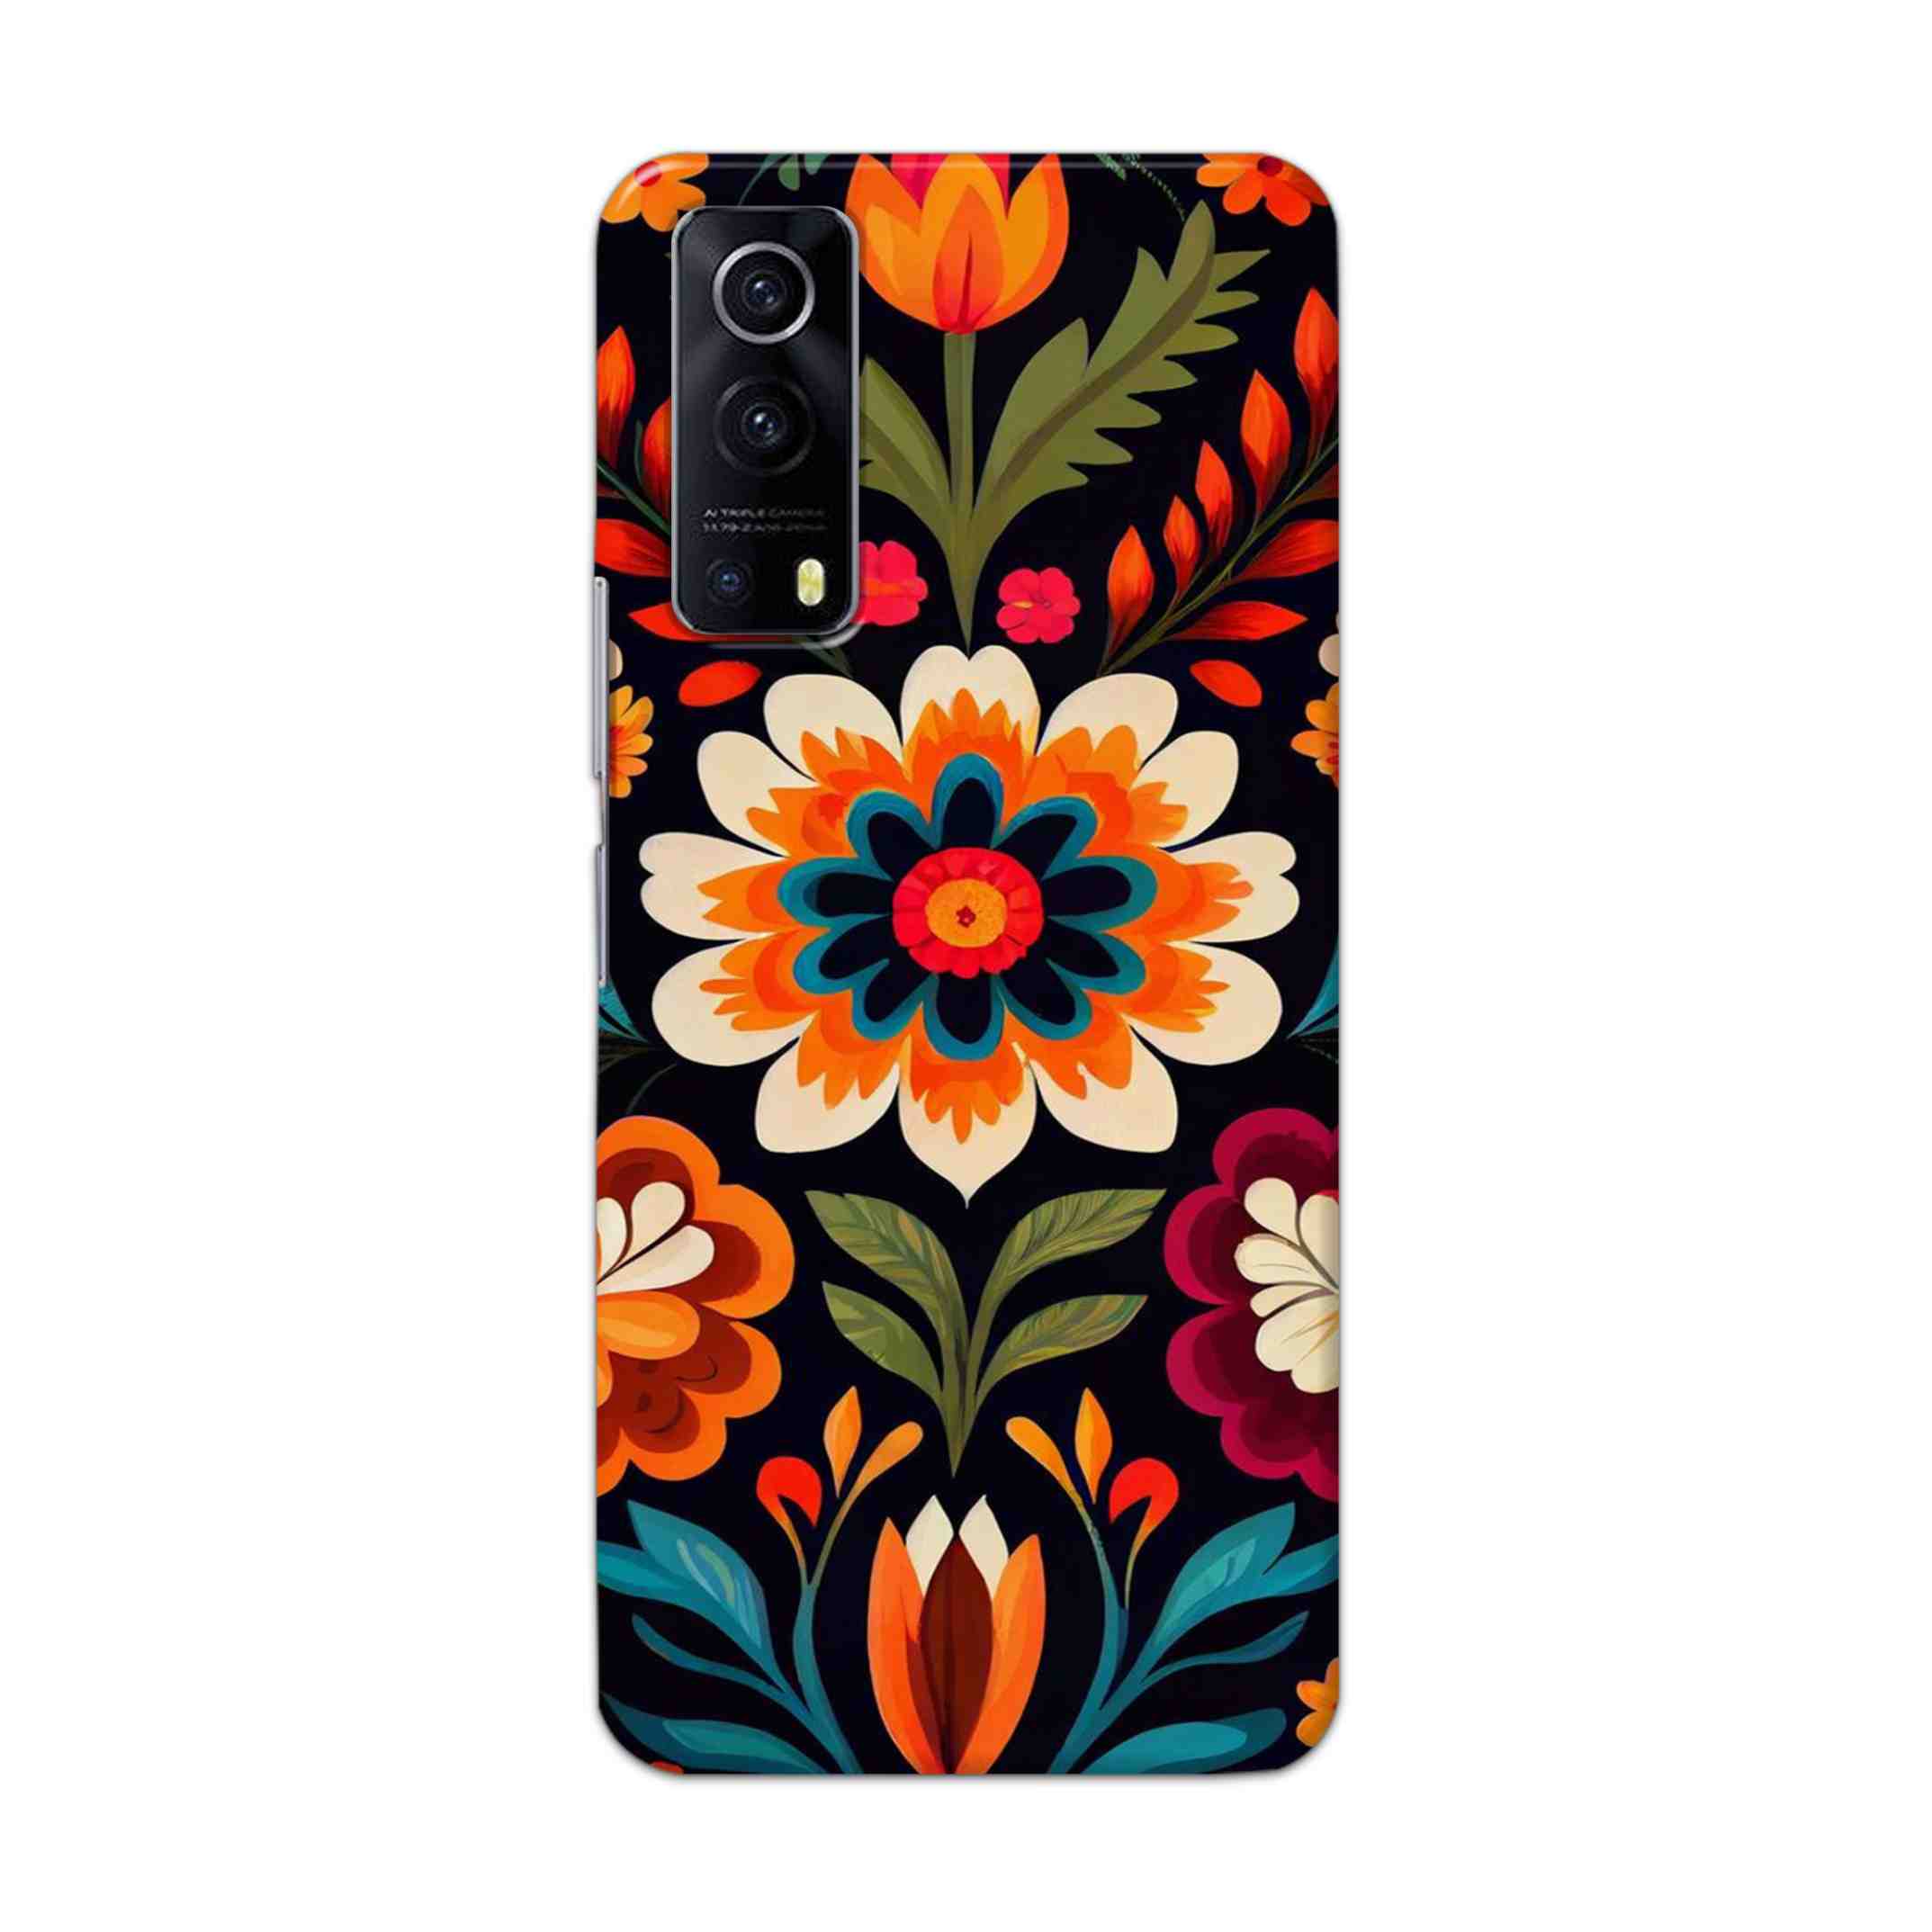 Buy Flower Hard Back Mobile Phone Case Cover For Vivo IQOO Z3 Online